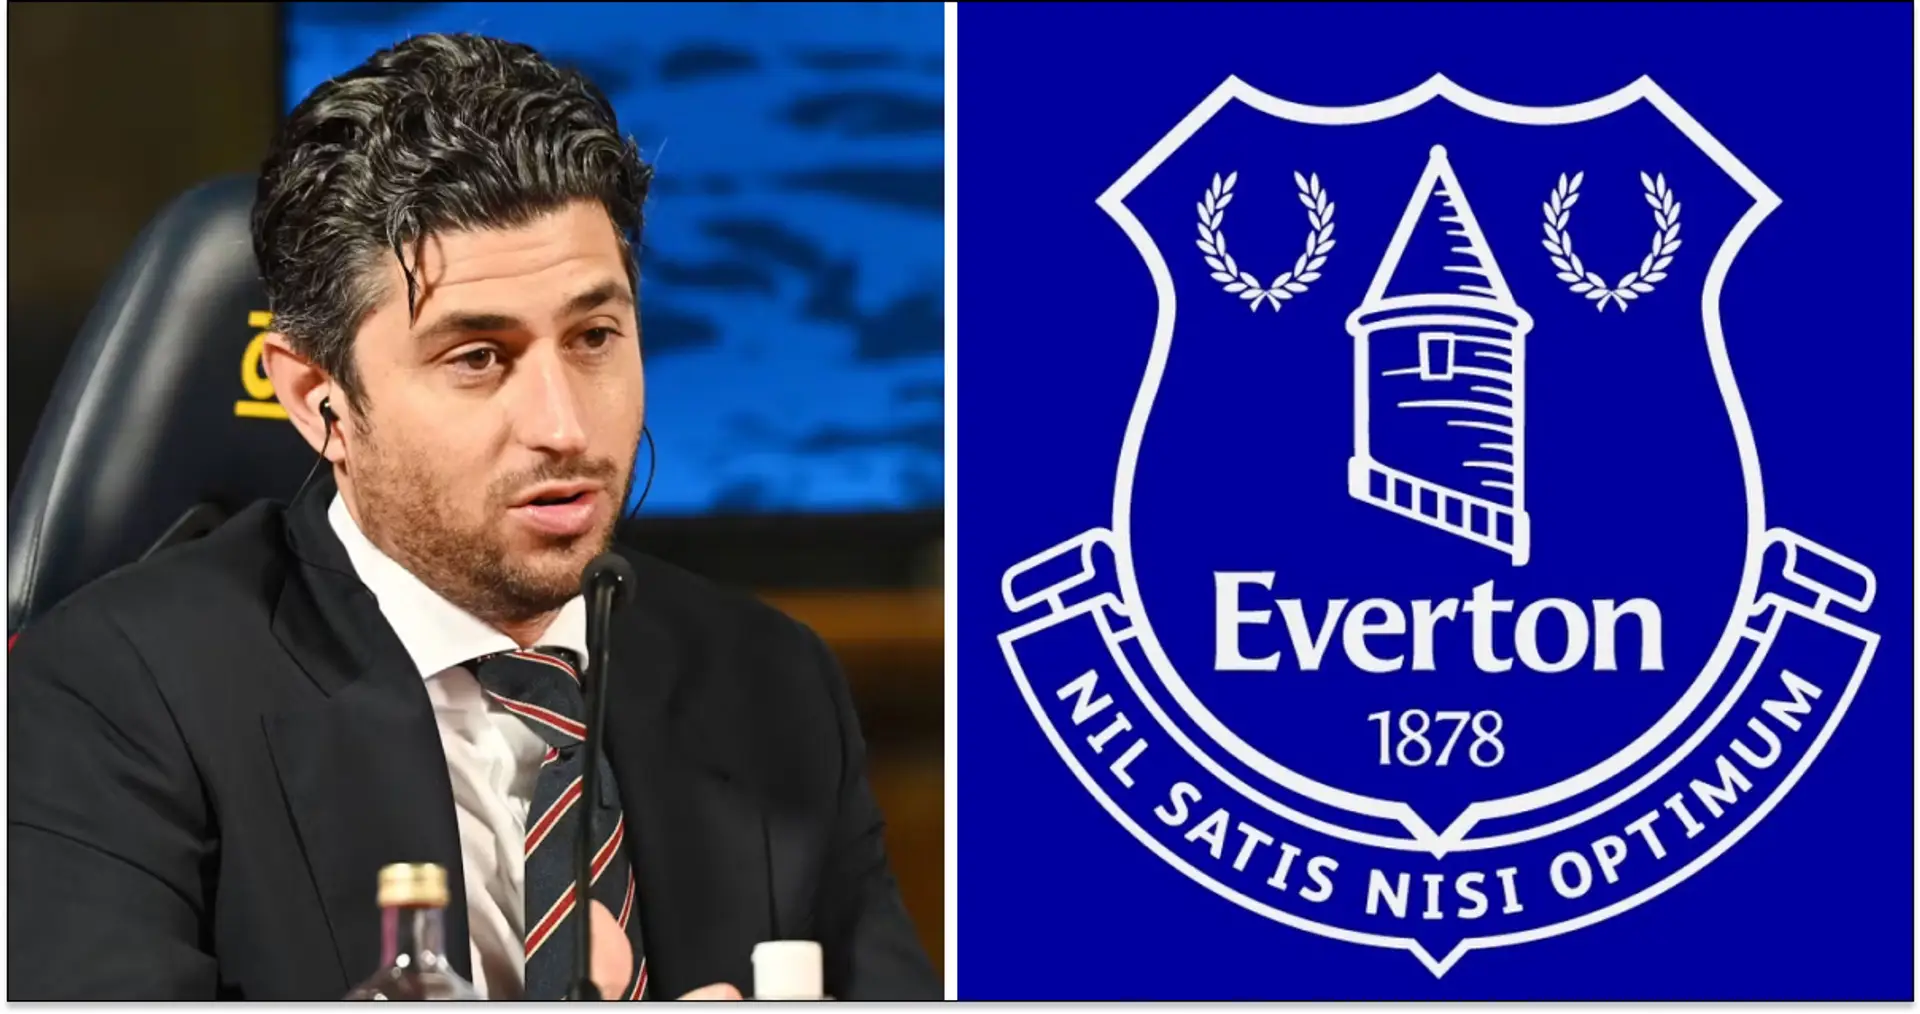 Les nouveaux propriétaires d'Everton accusés d'enlèvement et d'extorsion, le fondateur reconnu coupable de trafic de drogue